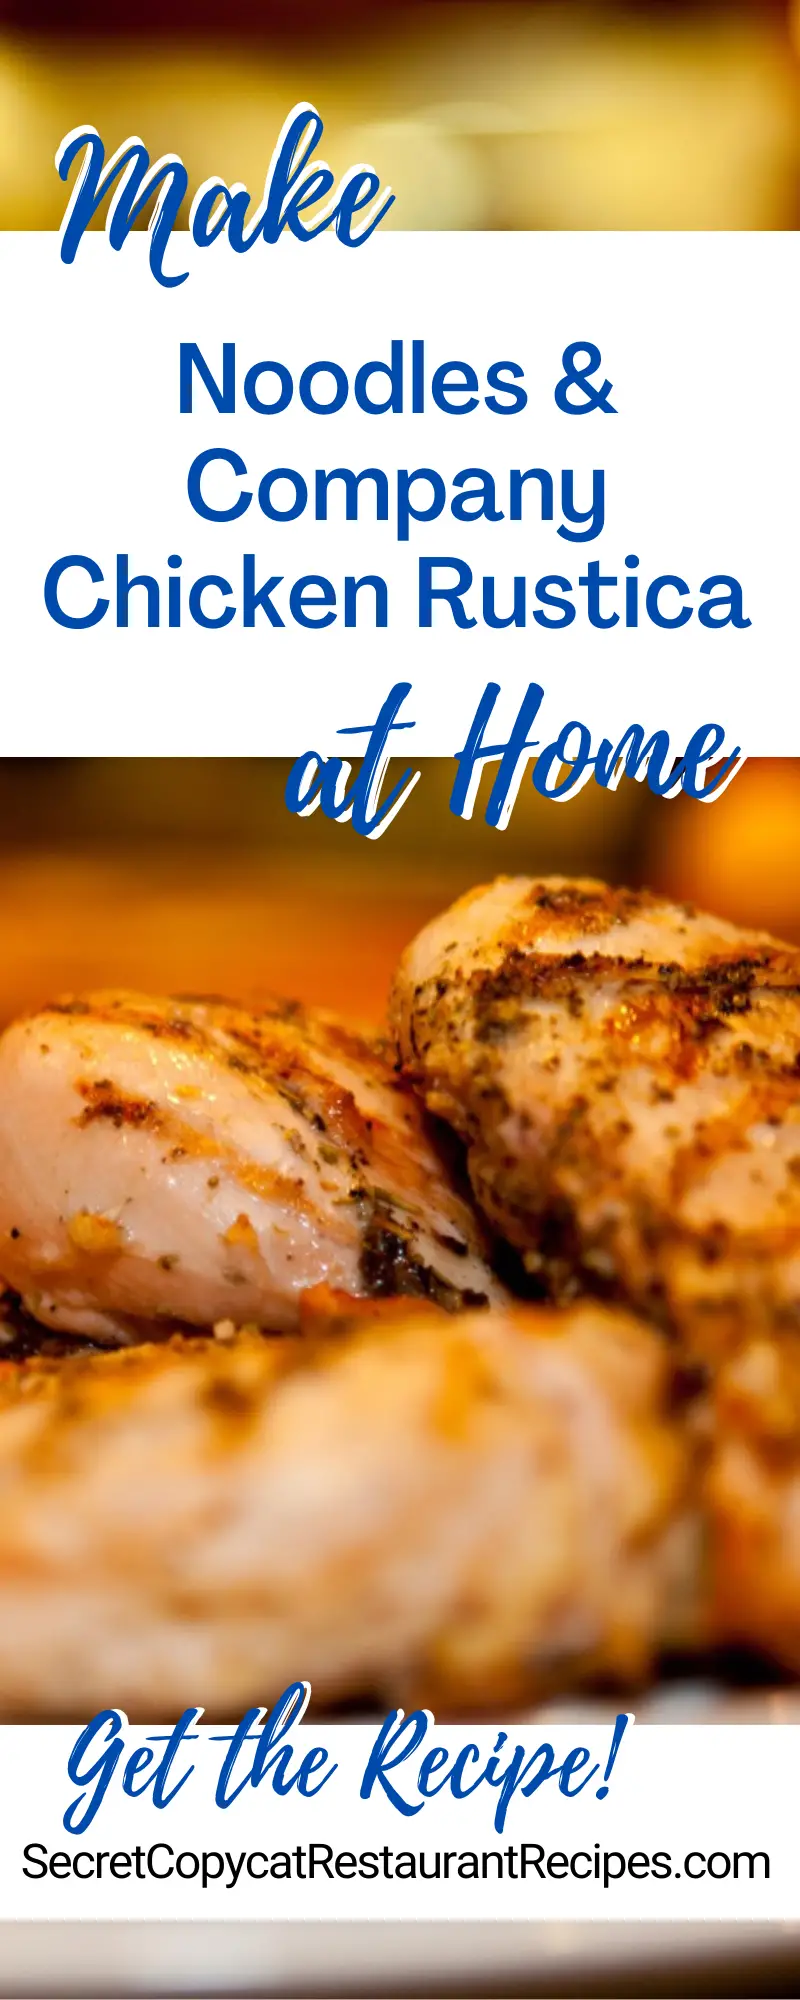 Noodles & Company Chicken Rustica Recipe